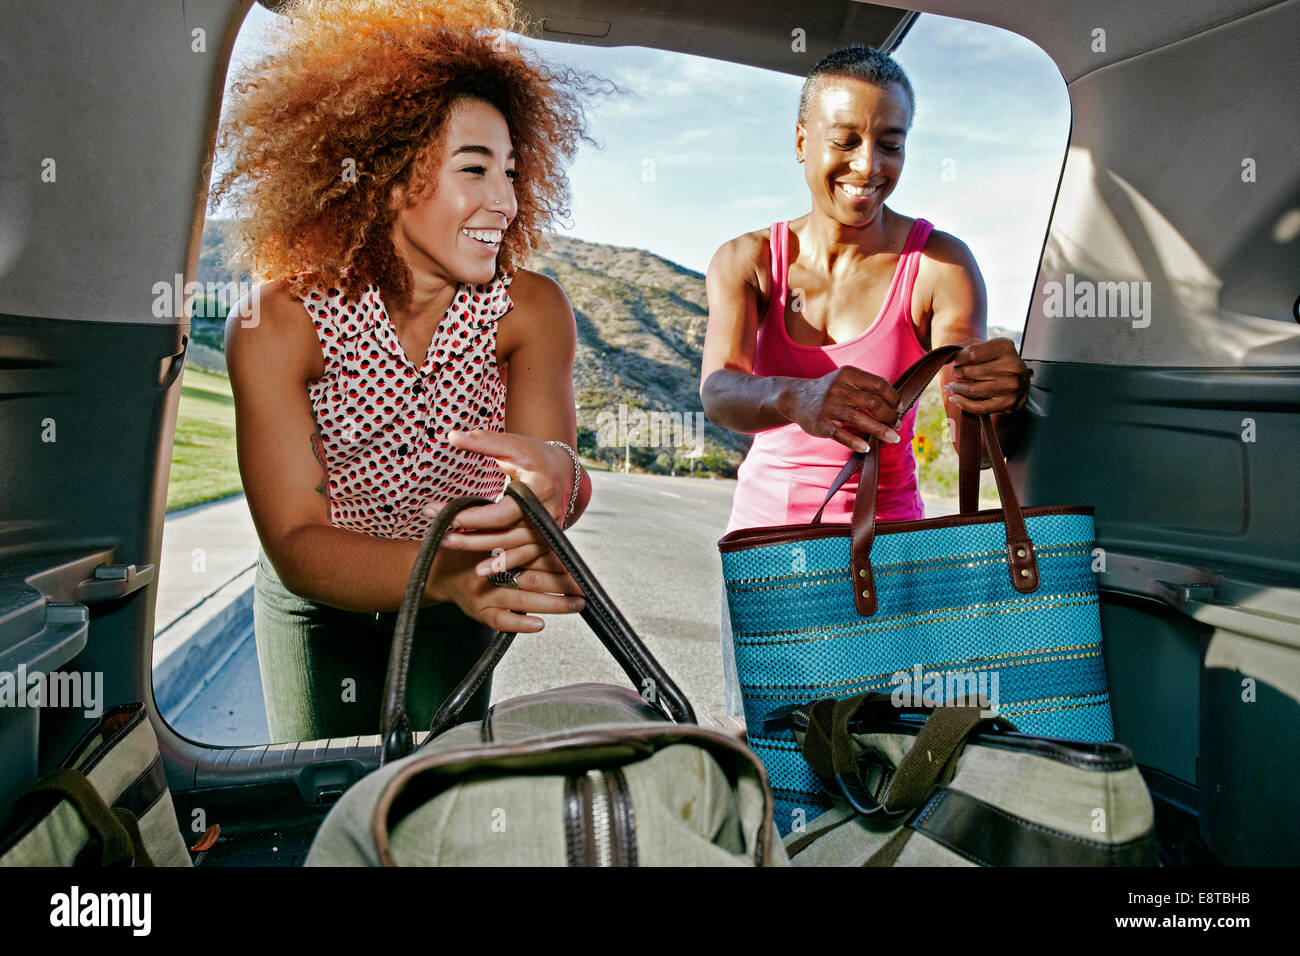 Mutter und Tochter entladen Taschen aus dem Auto Stockfotografie - Alamy